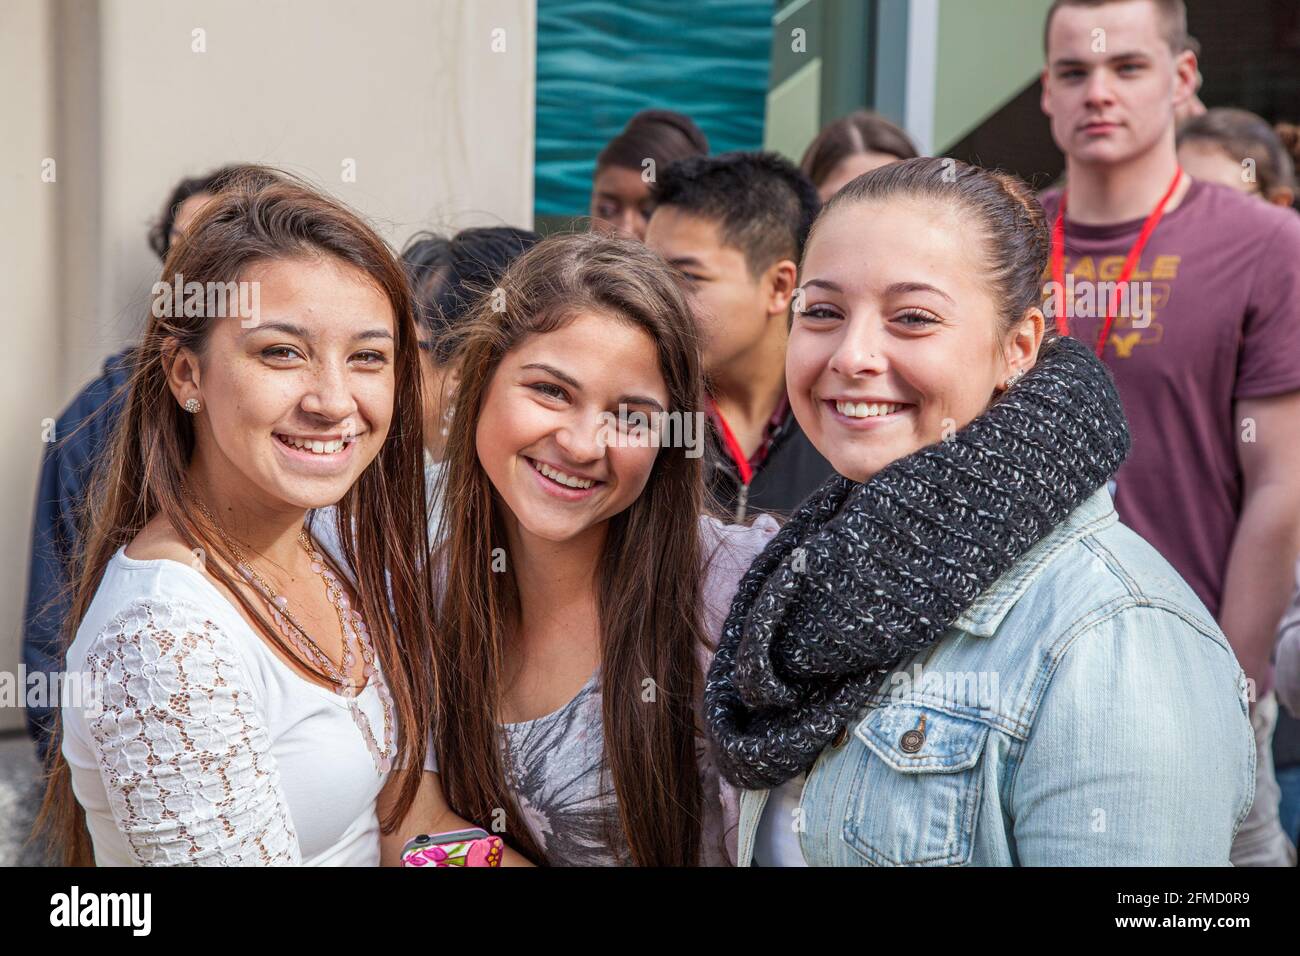 Three happy cheerful high school girls Stock Photo